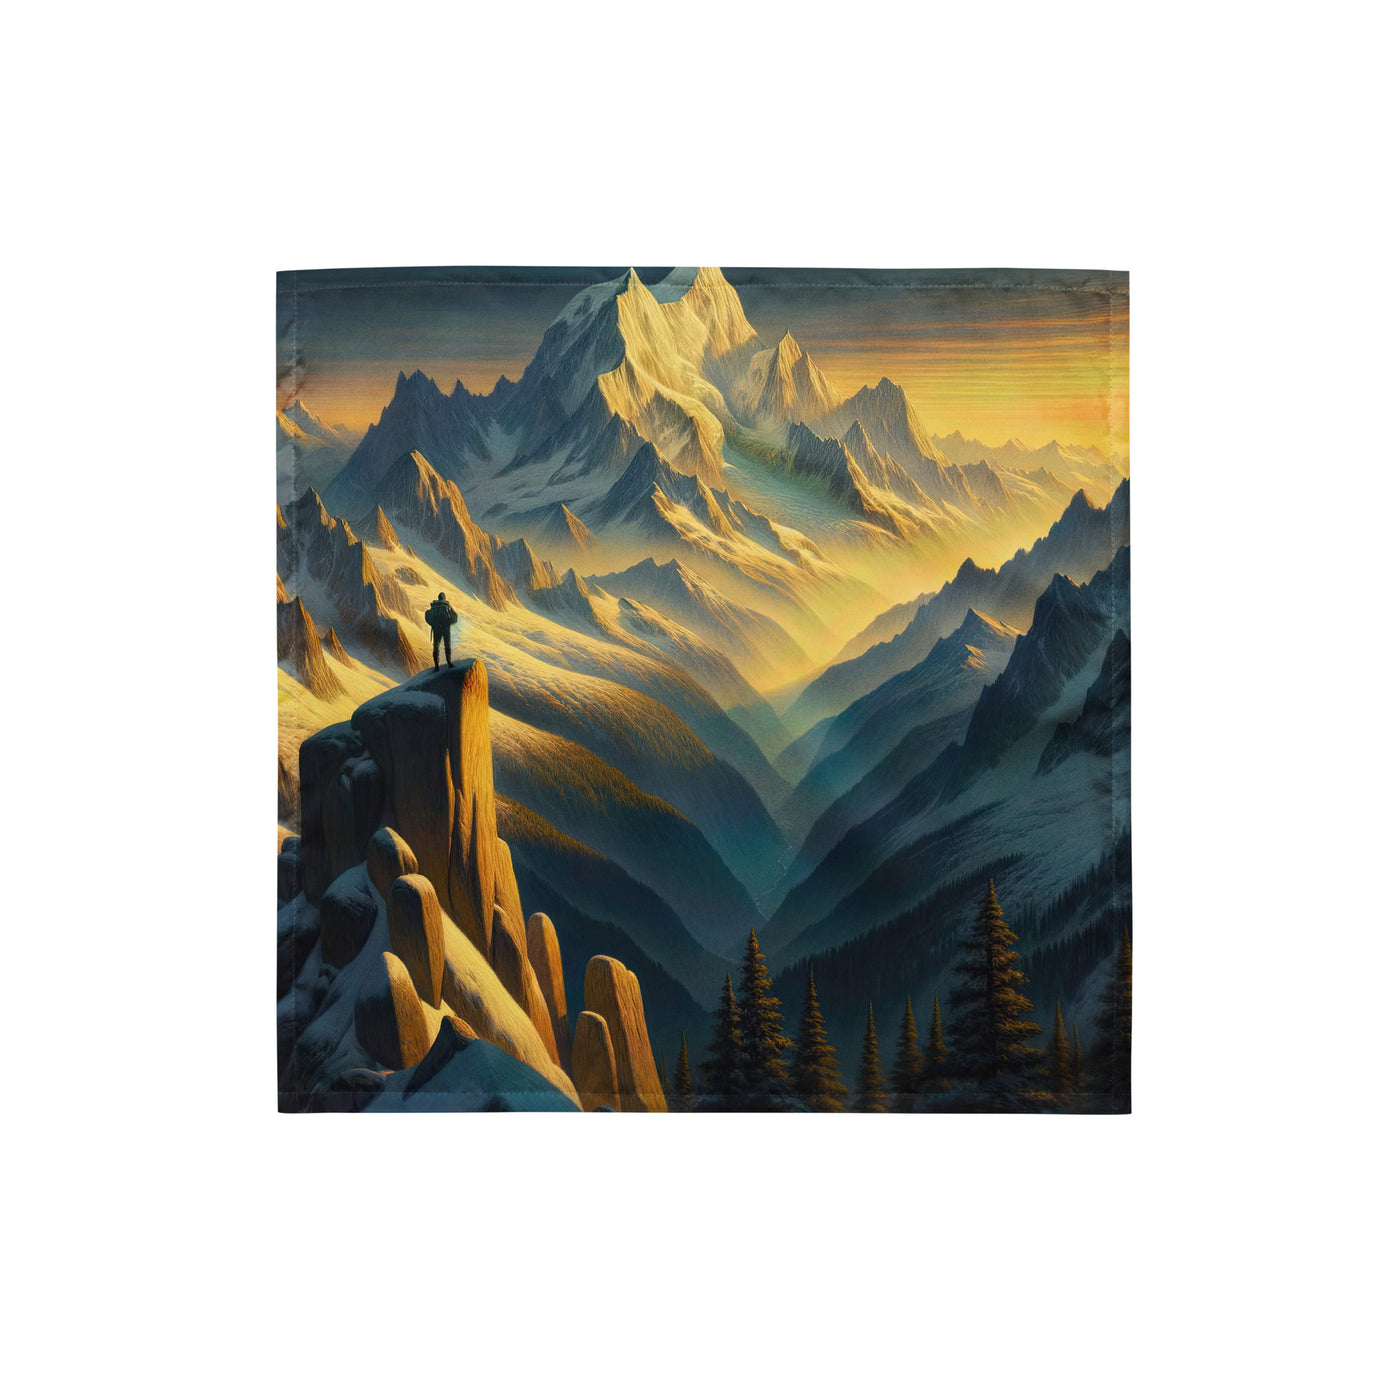 Ölgemälde eines Wanderers bei Morgendämmerung auf Alpengipfeln mit goldenem Sonnenlicht - Bandana (All-Over Print) wandern xxx yyy zzz S